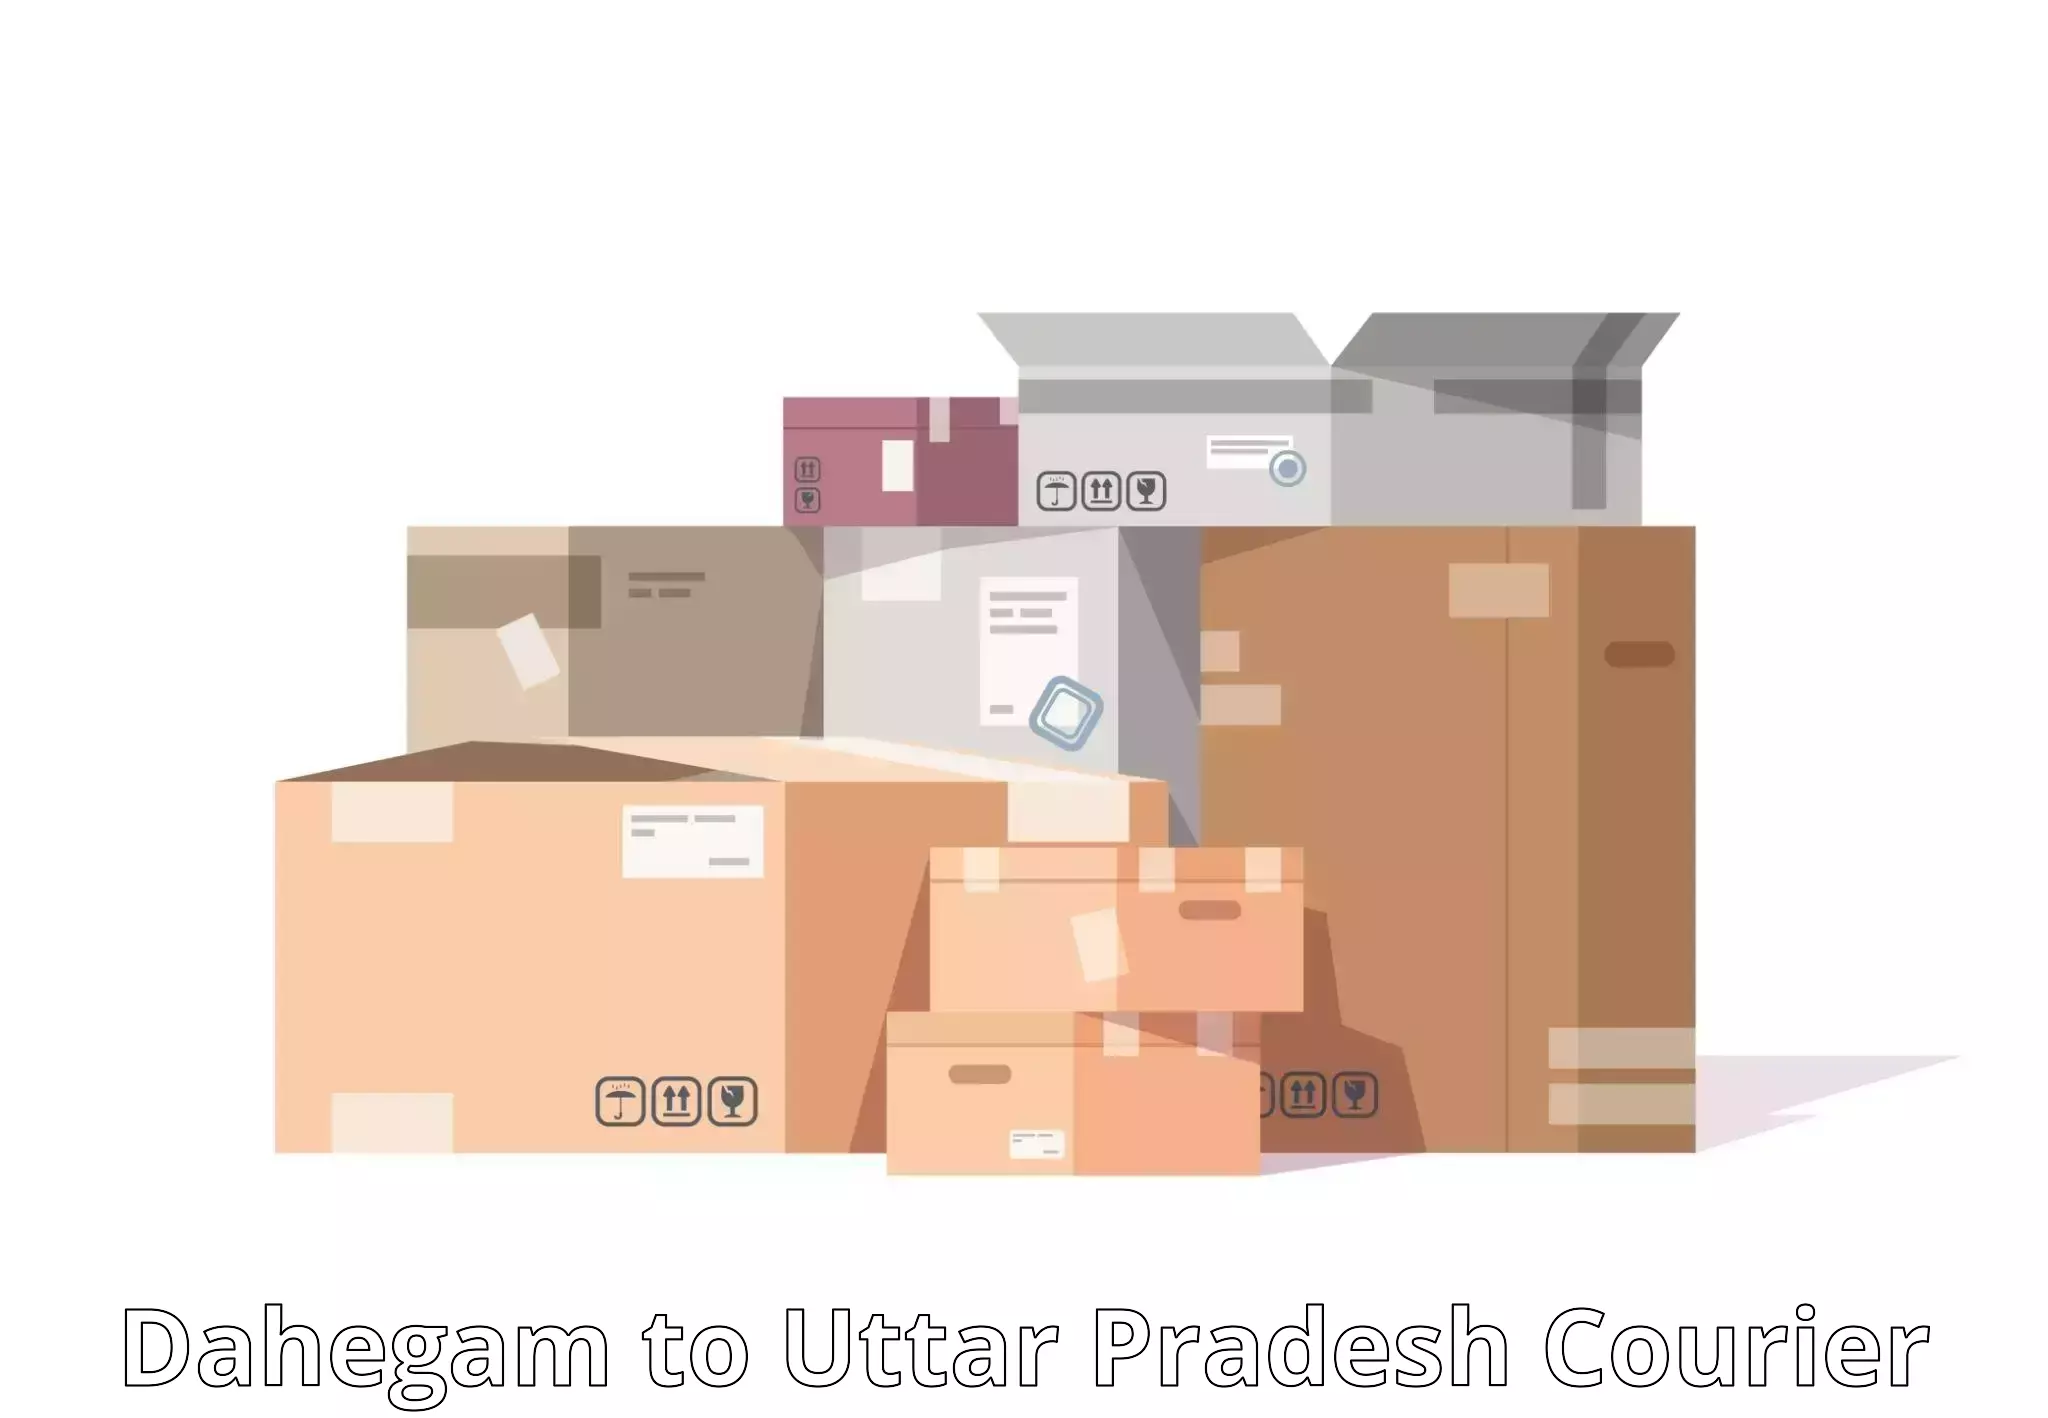 Smart parcel solutions Dahegam to Rath